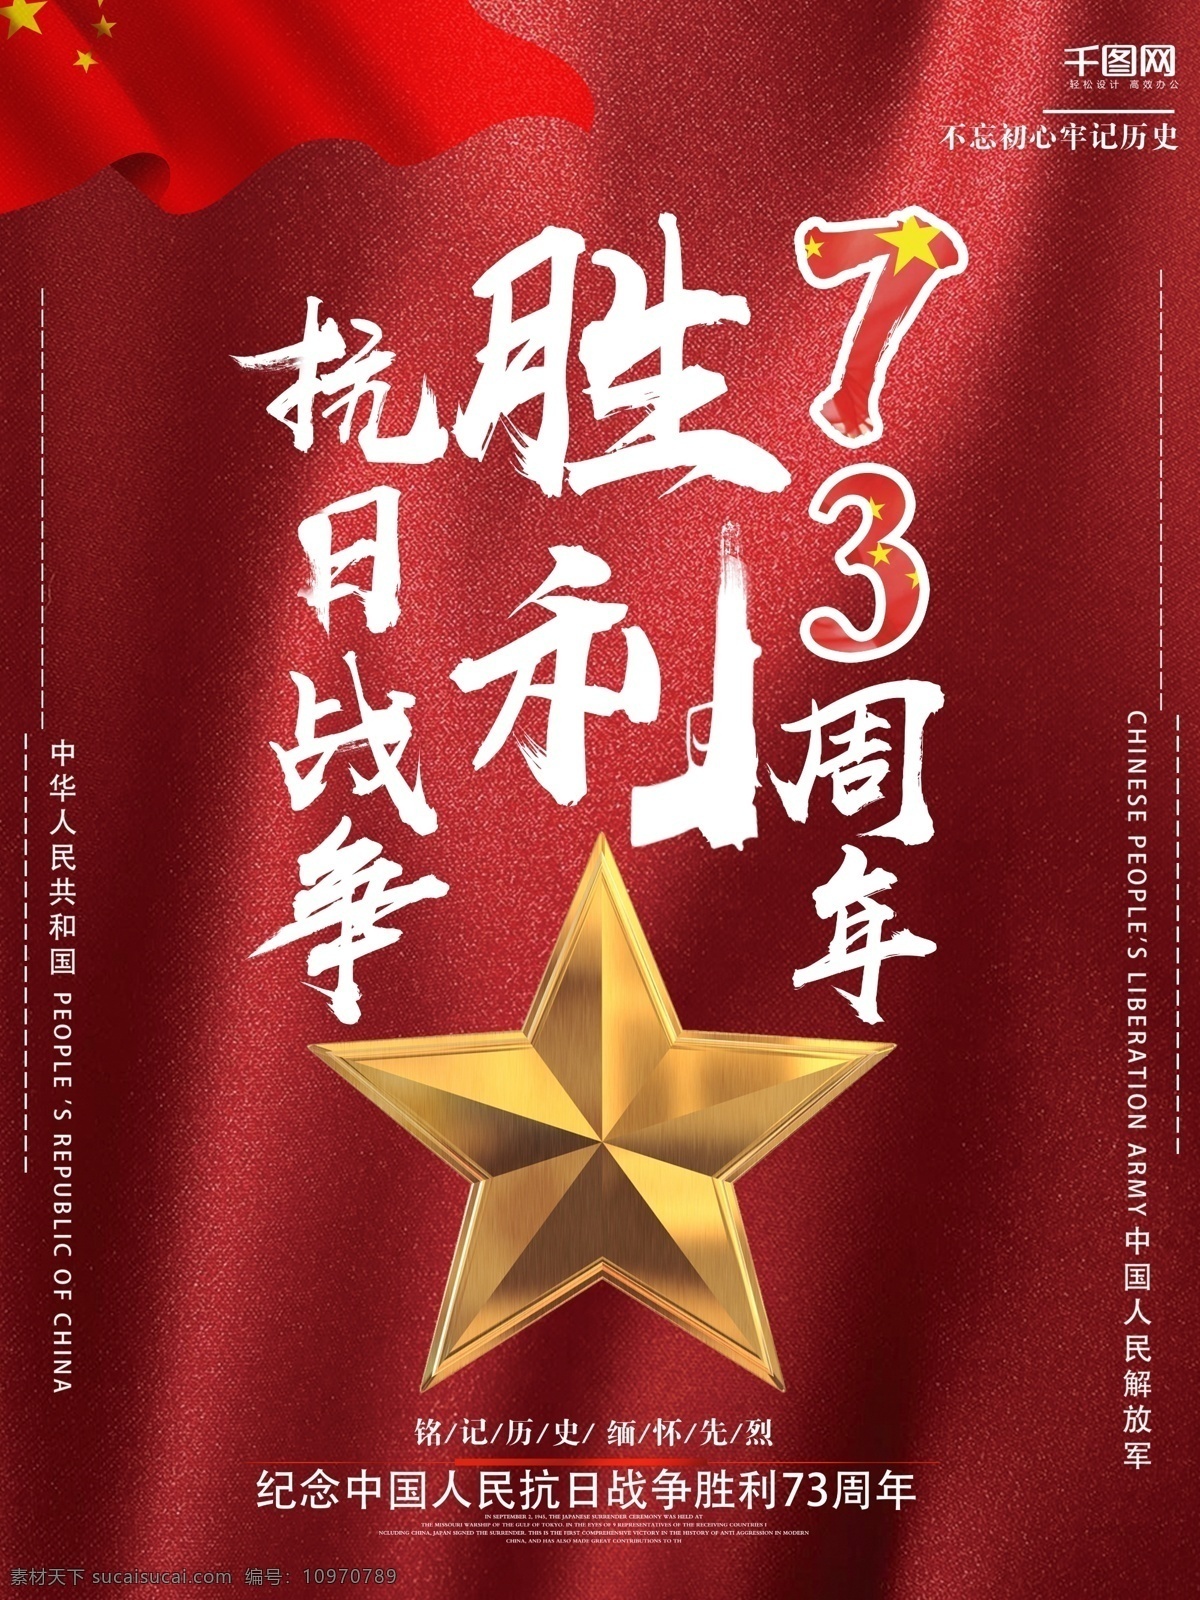 中国 抗日战争 胜利 周年 海报 抗日海报 胜利海报 红色背景 五角星 抗日胜利 73周年海报